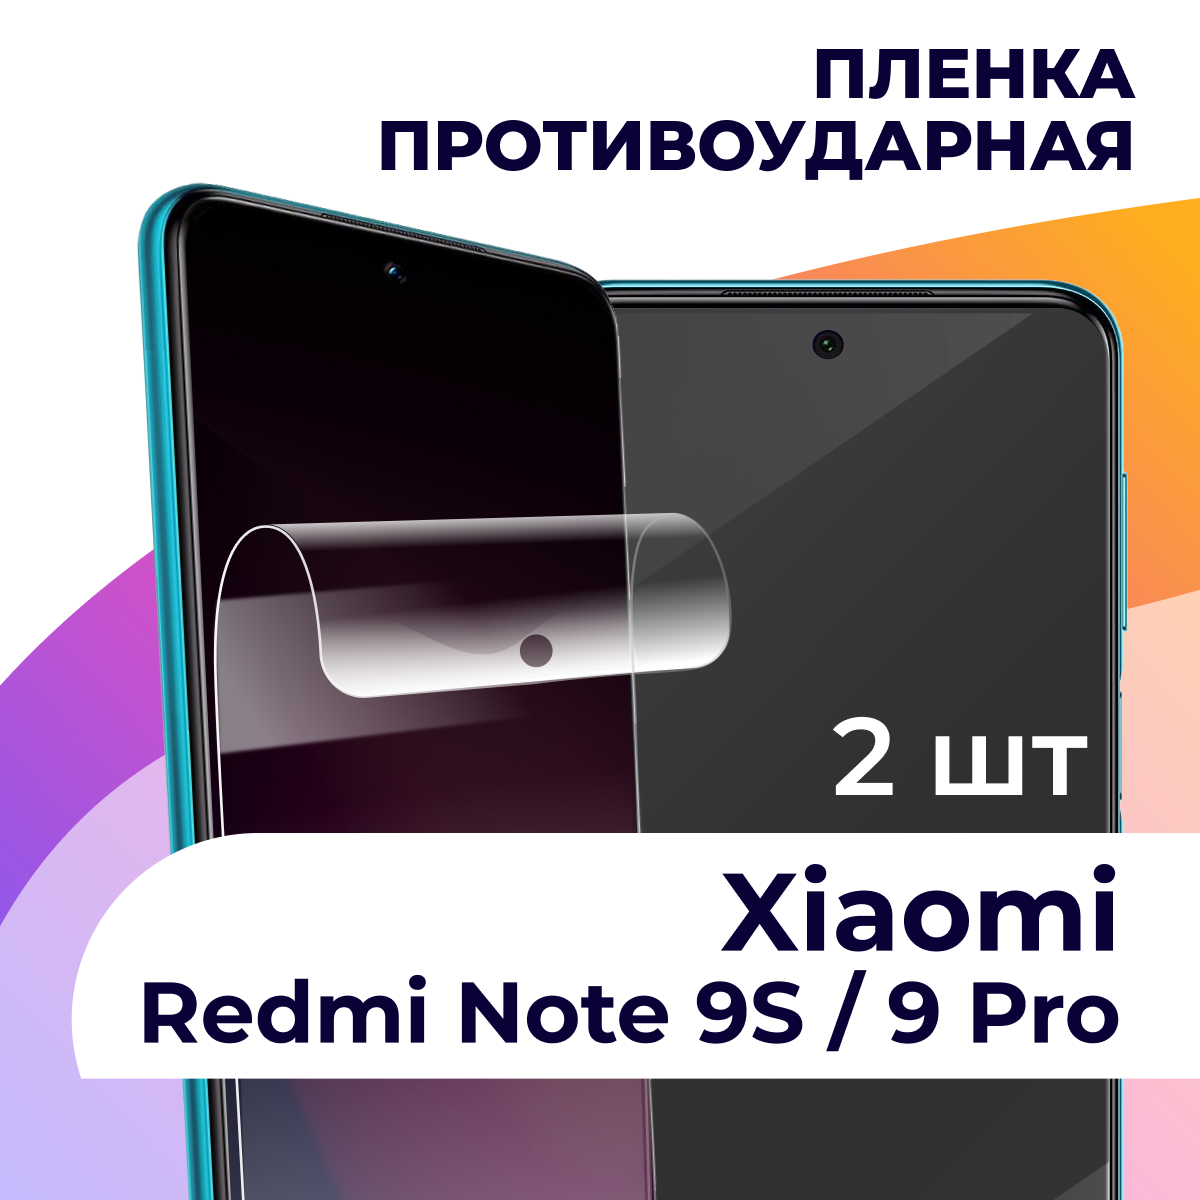 Гидрогелевая пленка для смартфона Xiaomi Redmi Note 9S / 9 Pro / Противоударная пленка на телефон Сяоми Редми Нот 9С / 9 Про / Защитная пленка